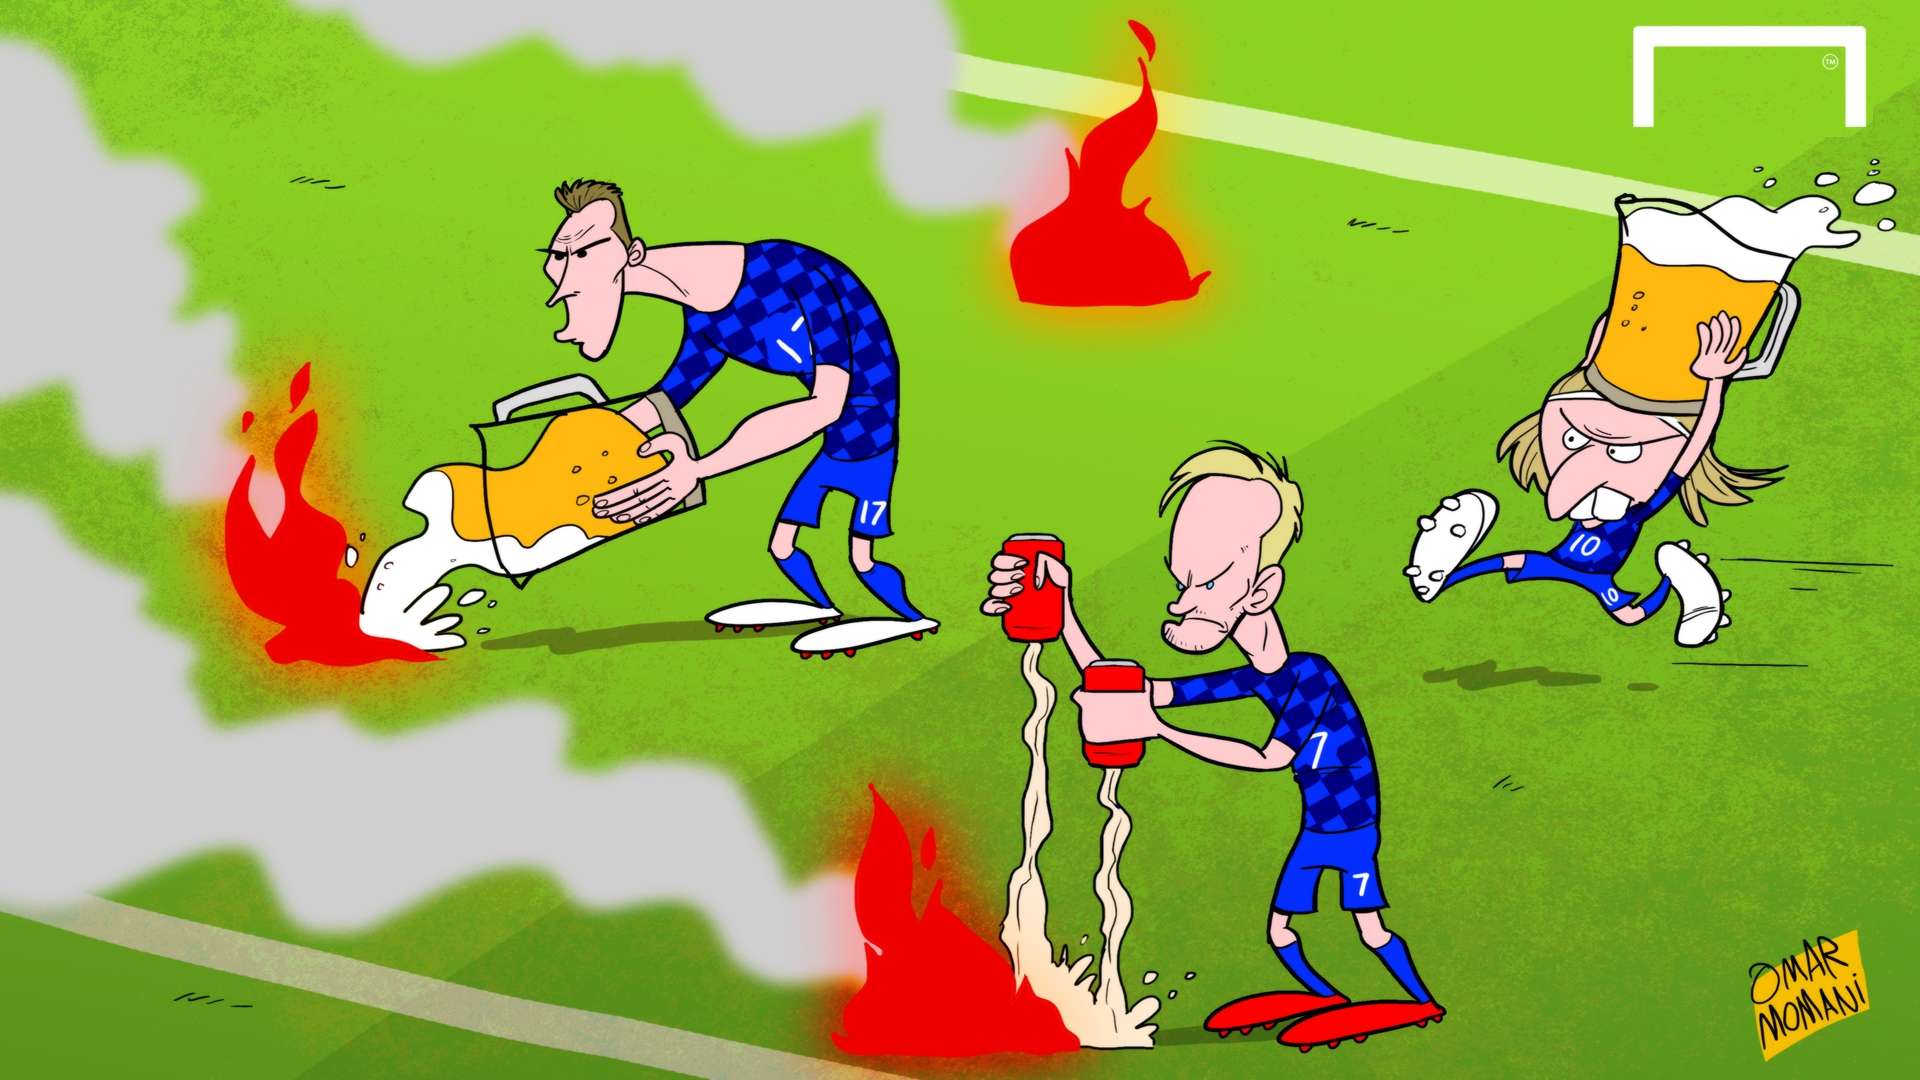 Cartoon Croatians extinguish fire flares